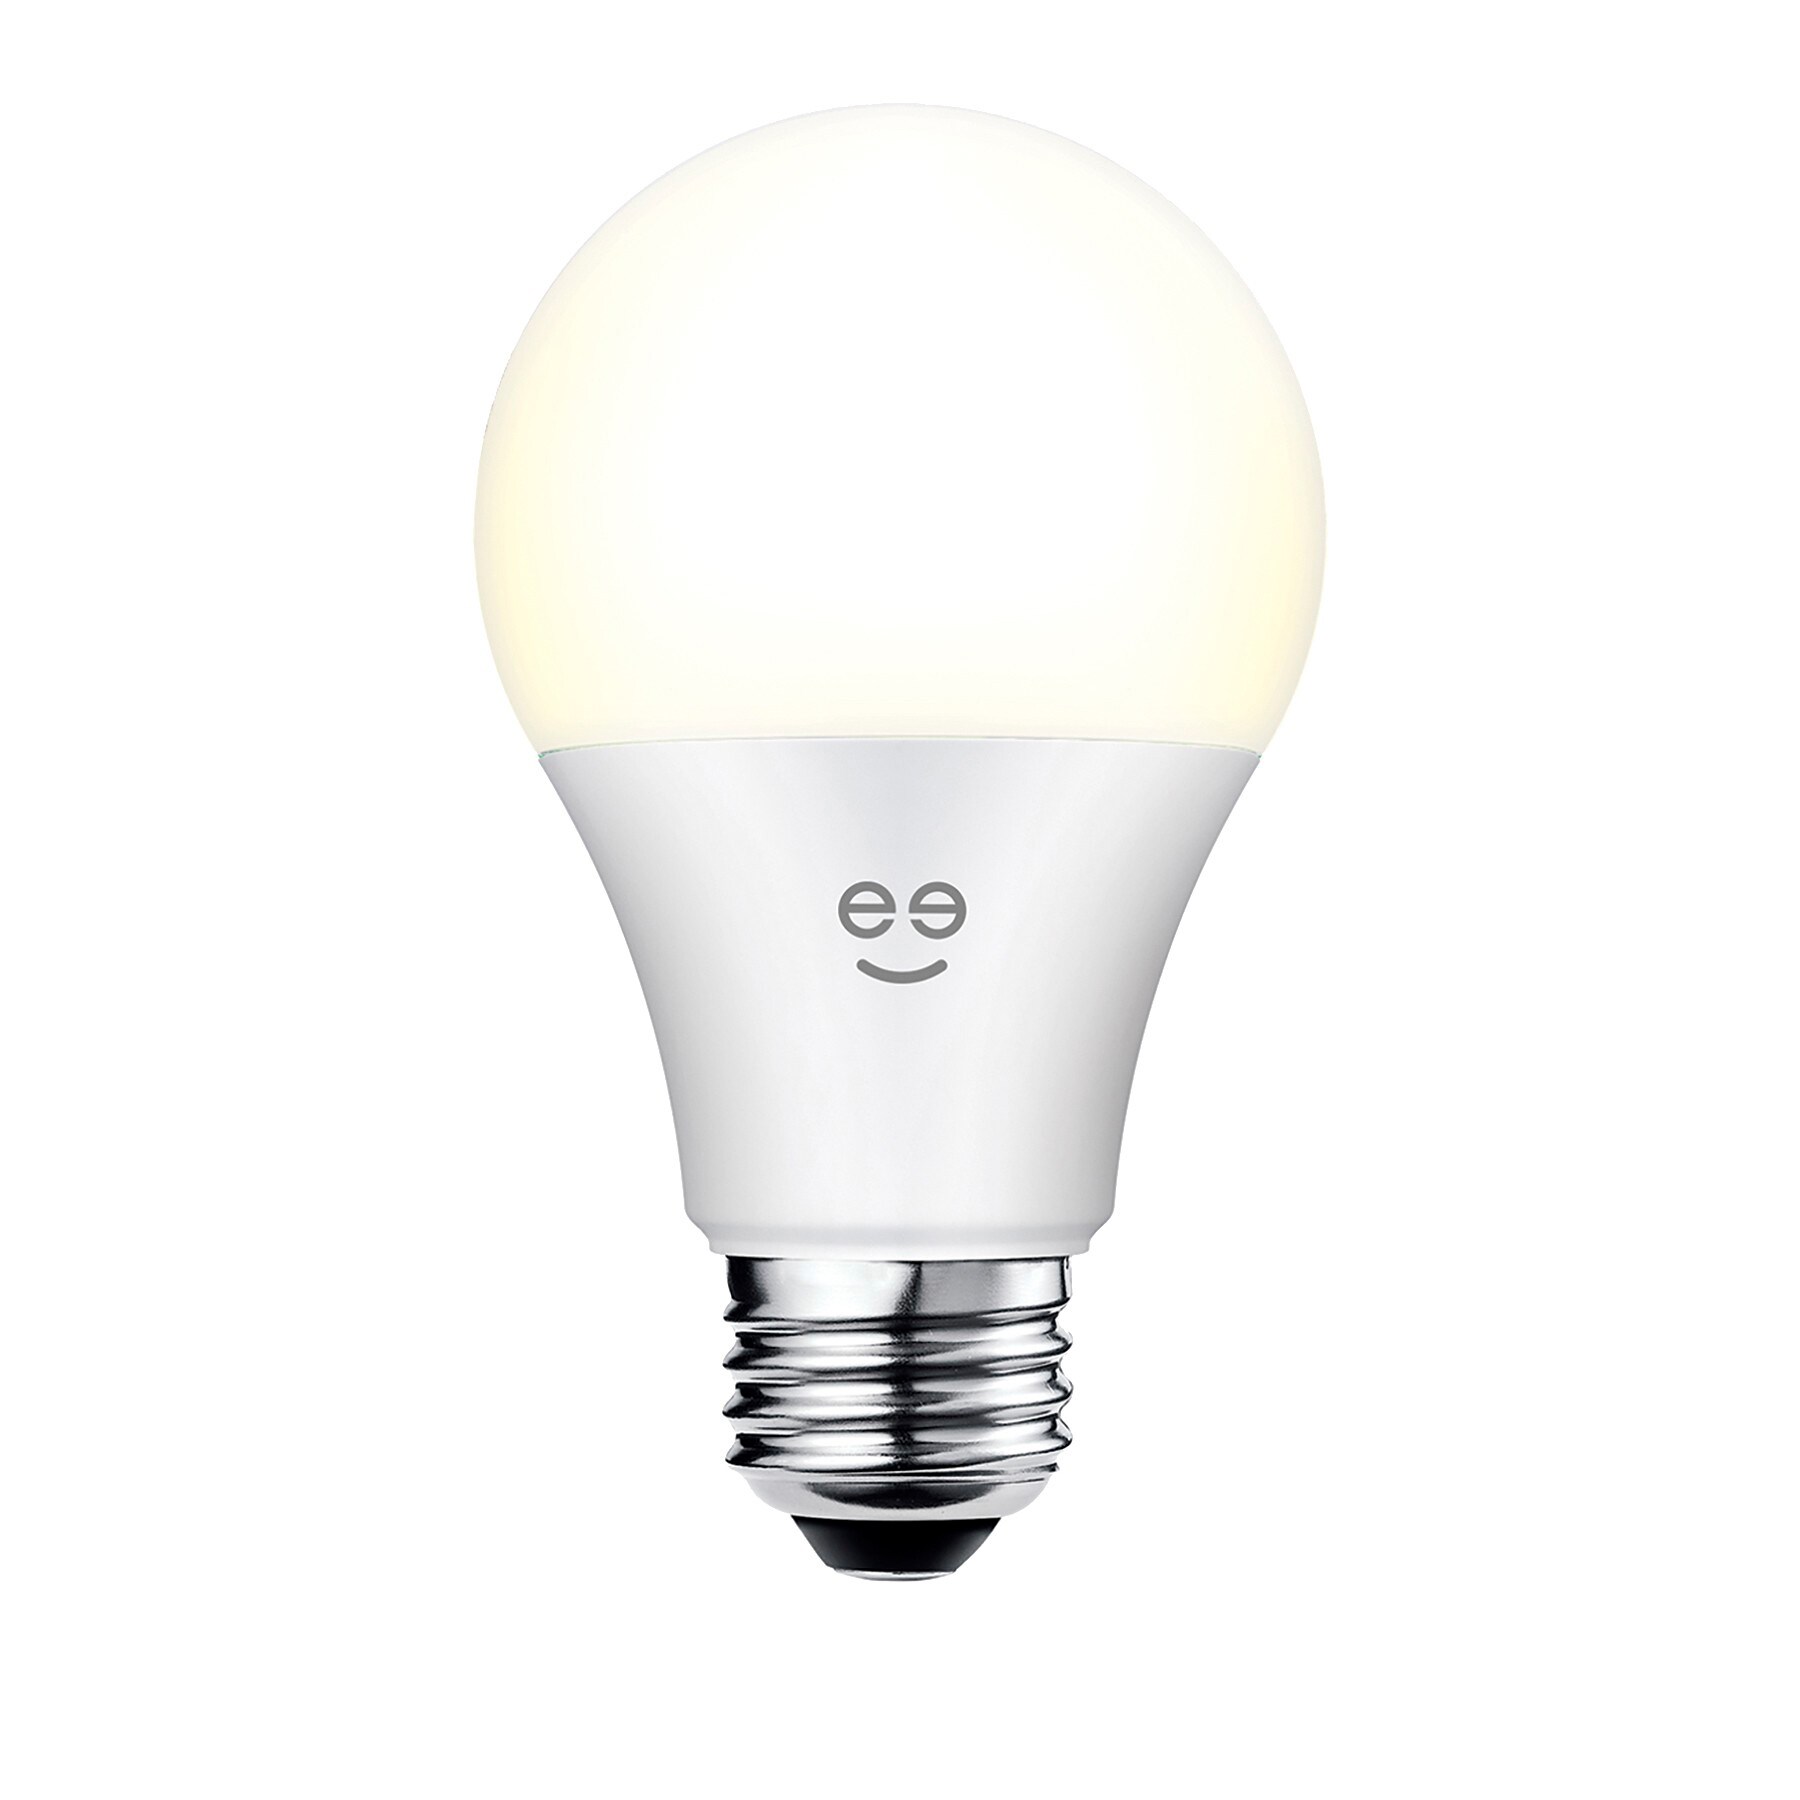 Greeni Lux 800 smart LED-lampa 9W A19 E27 - Alla smarta produkter ...